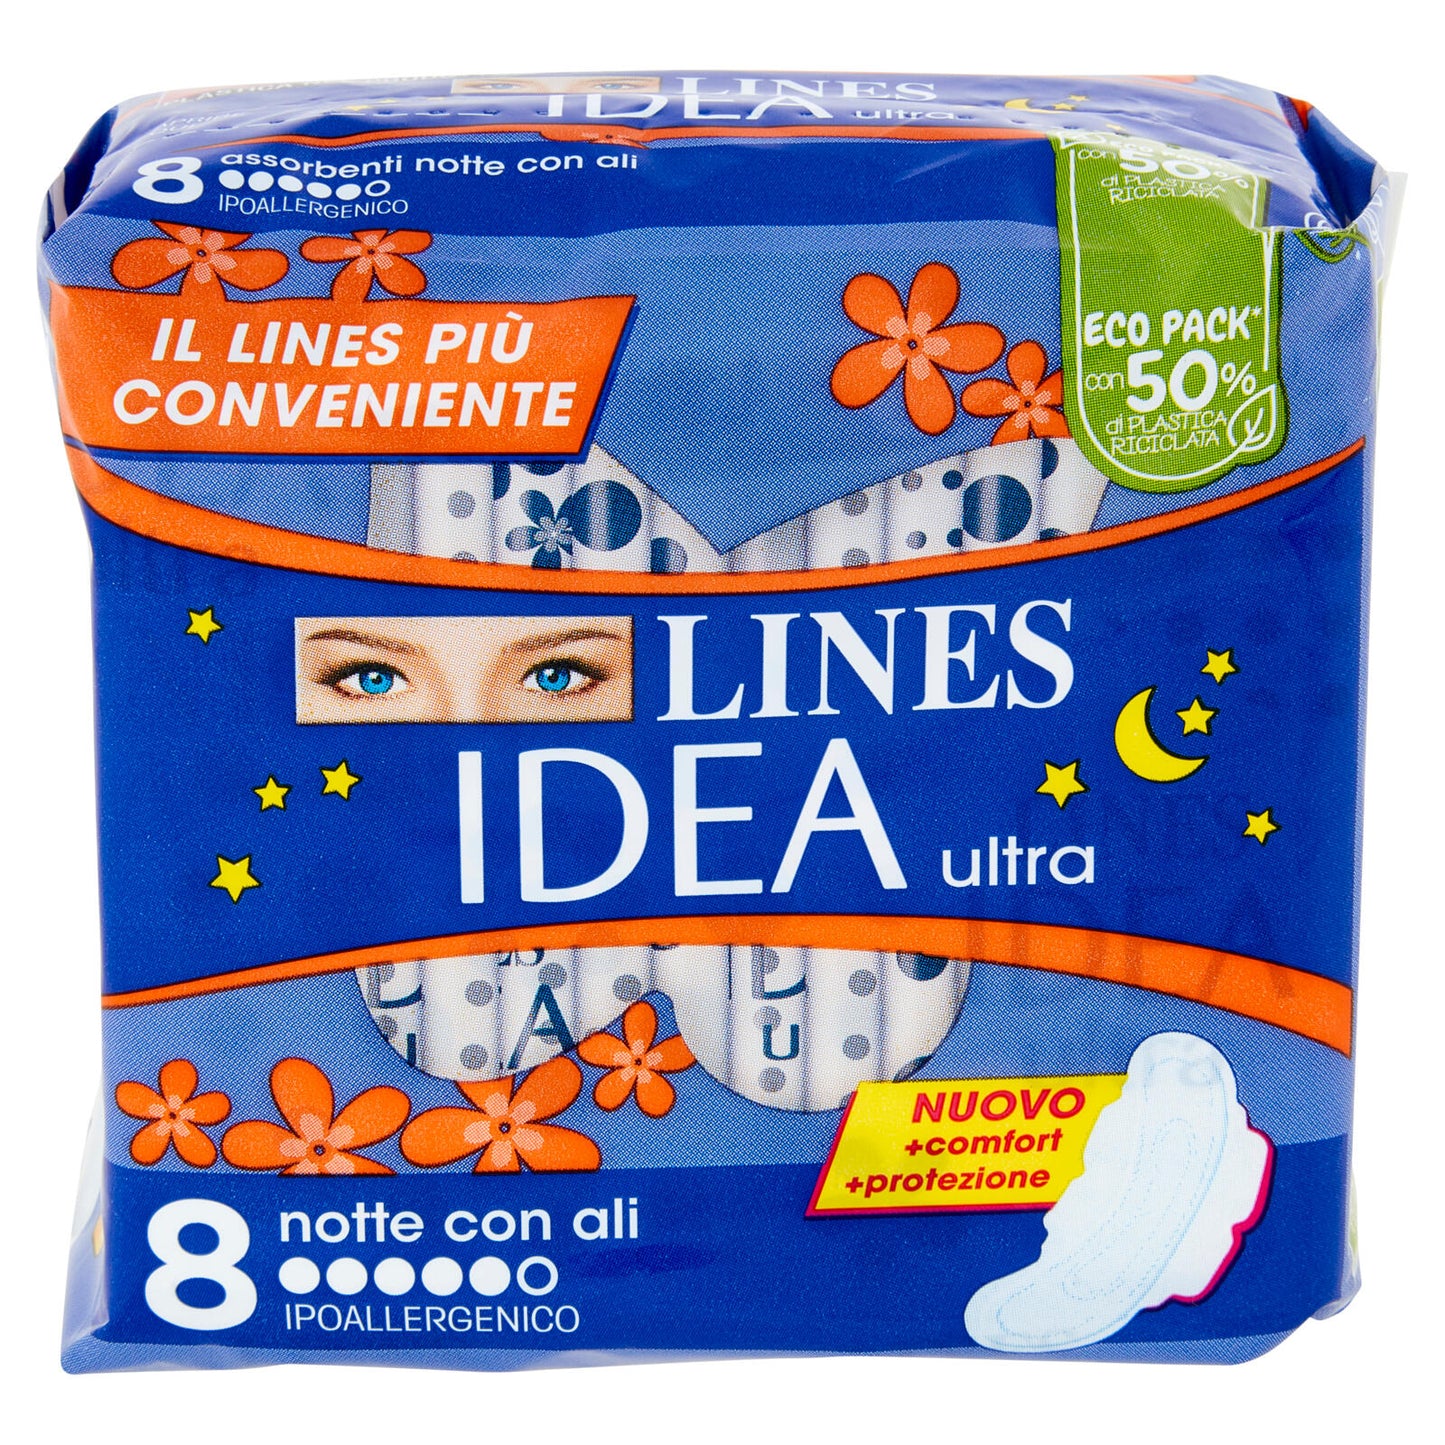 Lines Idea ultra notte con ali 8 pz